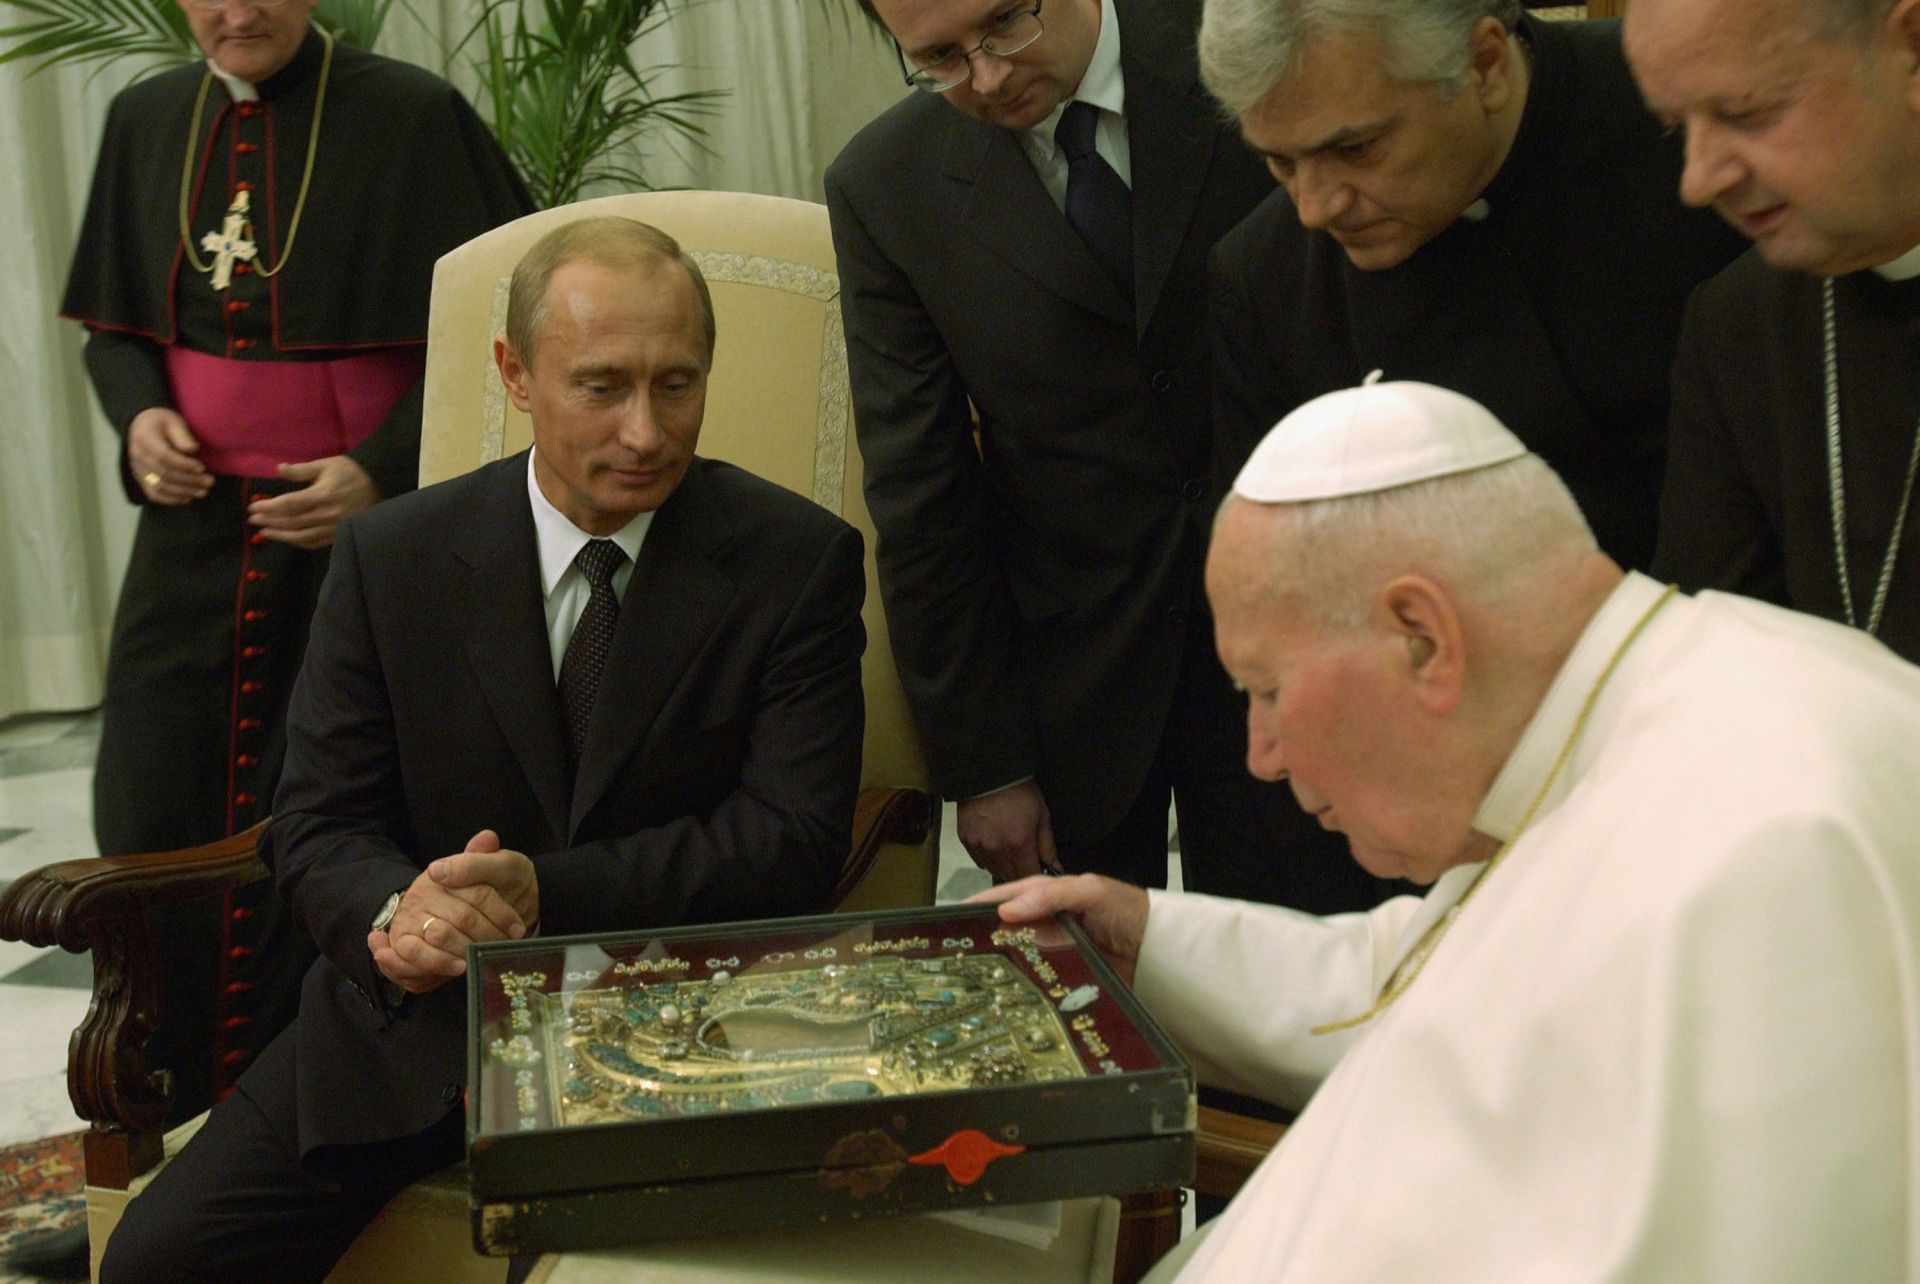 5 ноември 2003 г. - Папа Йоан Павел II показва религиозна икона на Владимир Путин по време на срещата им във Ватикана. Иконата, известна като Божията майка на Казан, е много почитана от руските поклонници. Папата обяви, че подобряването на отношенията между Ватикана и Руската православна църква е приоритет.